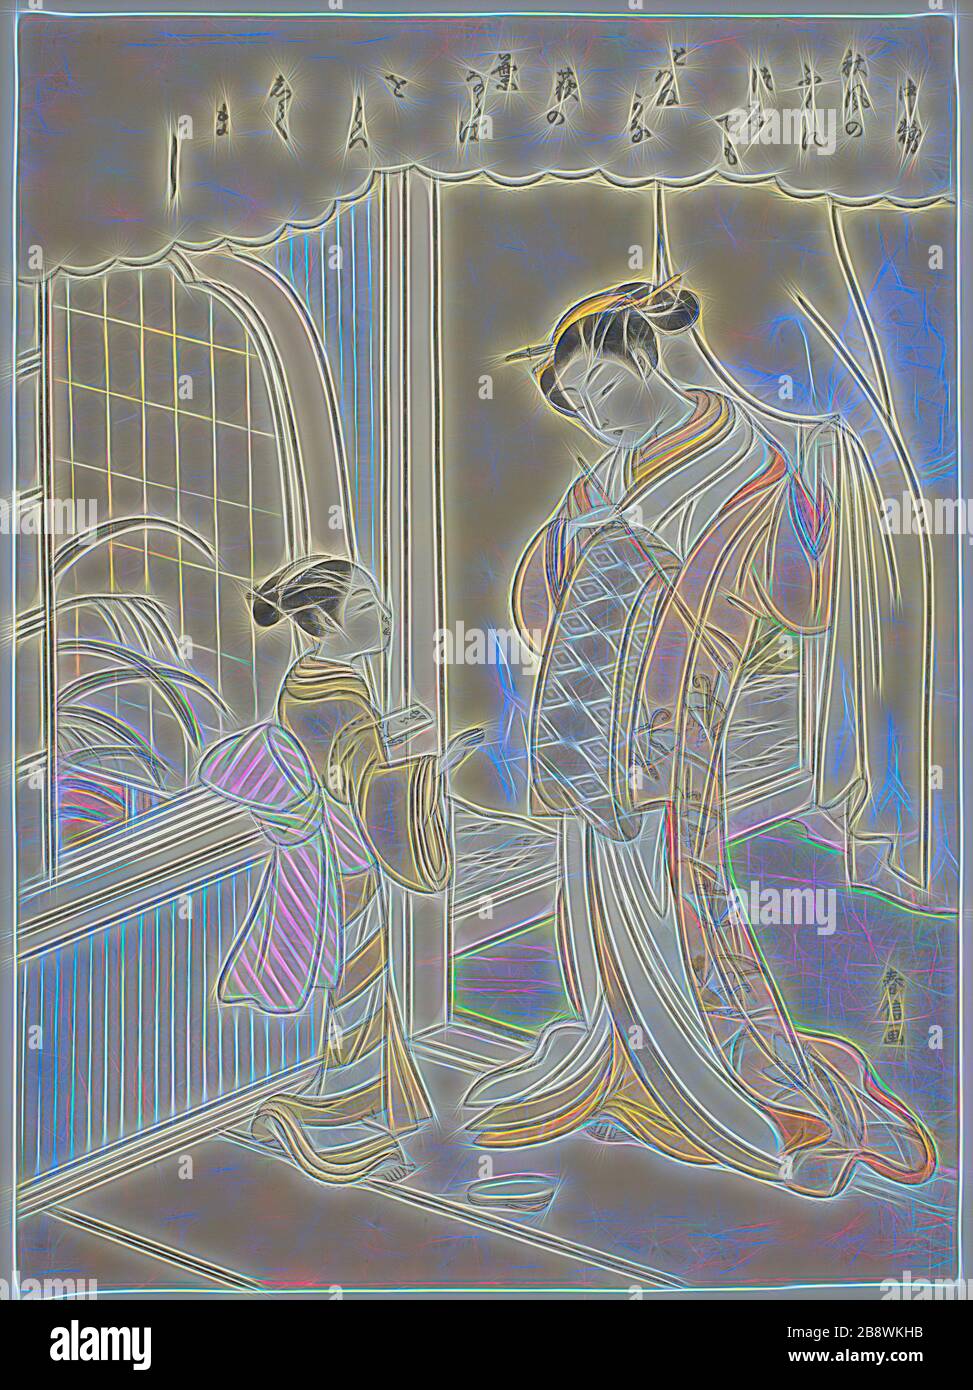 Poème de Nakatsukasa, d'une série sans titre de trente-six Poètes immortels, c. 1767/68, Suzuki Harunobu ?? ??, Japonais, 1725 (?)-1770, Japon, imprimé color woodblock, chuban, 10 7/8 x 8 in., repensé par Gibon, design de glanissement chaleureux et gai de la luminosité et des rayons de lumière radiance. L'art classique réinventé avec une touche moderne. La photographie inspirée du futurisme, qui embrasse l'énergie dynamique de la technologie moderne, du mouvement, de la vitesse et révolutionne la culture. Banque D'Images